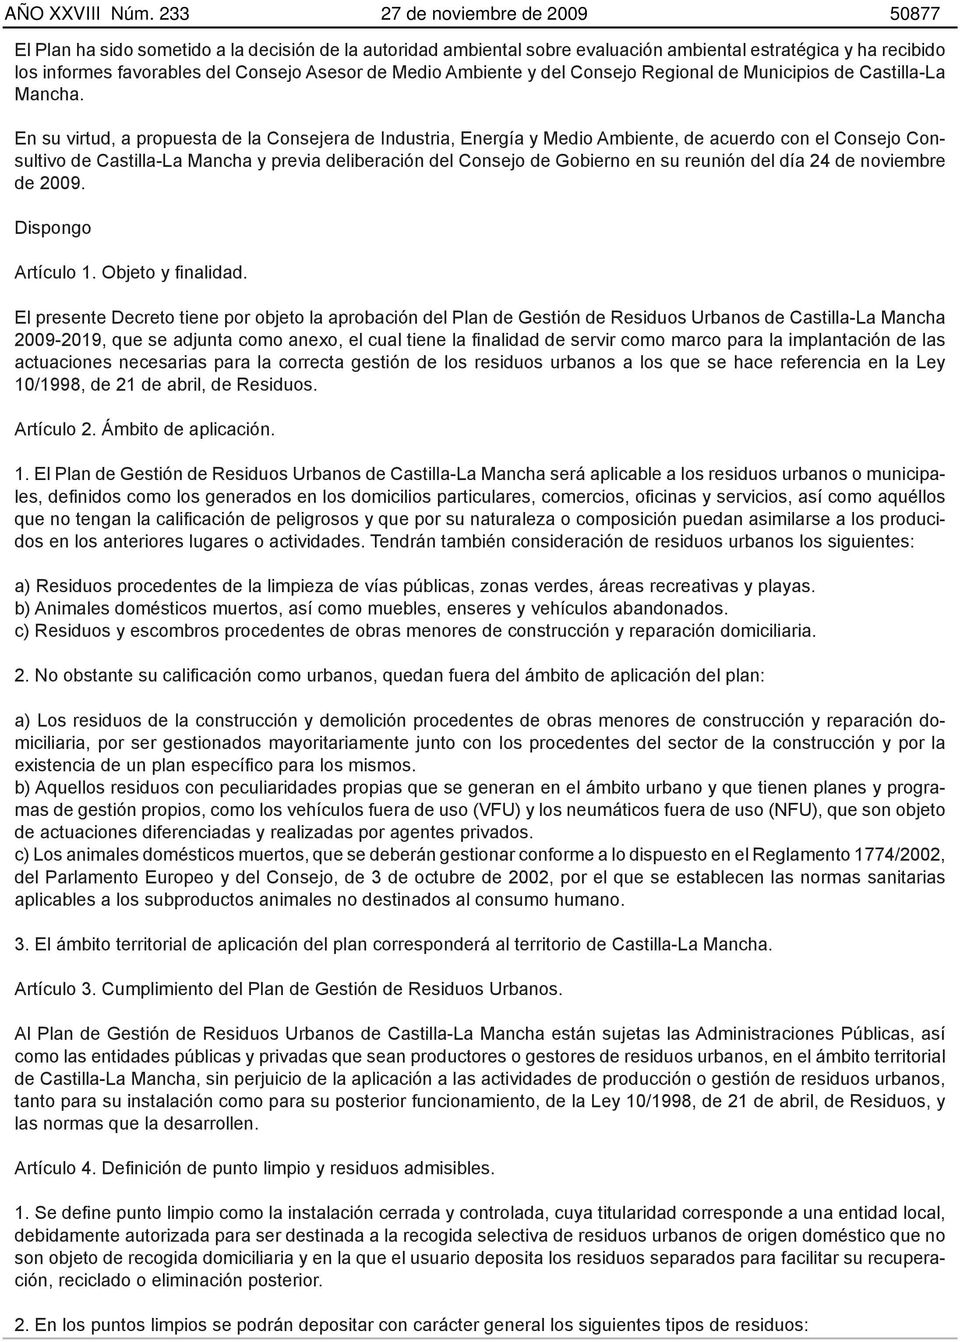 Medio Ambiente y del Consejo Regional de Municipios de Castilla-La Mancha.